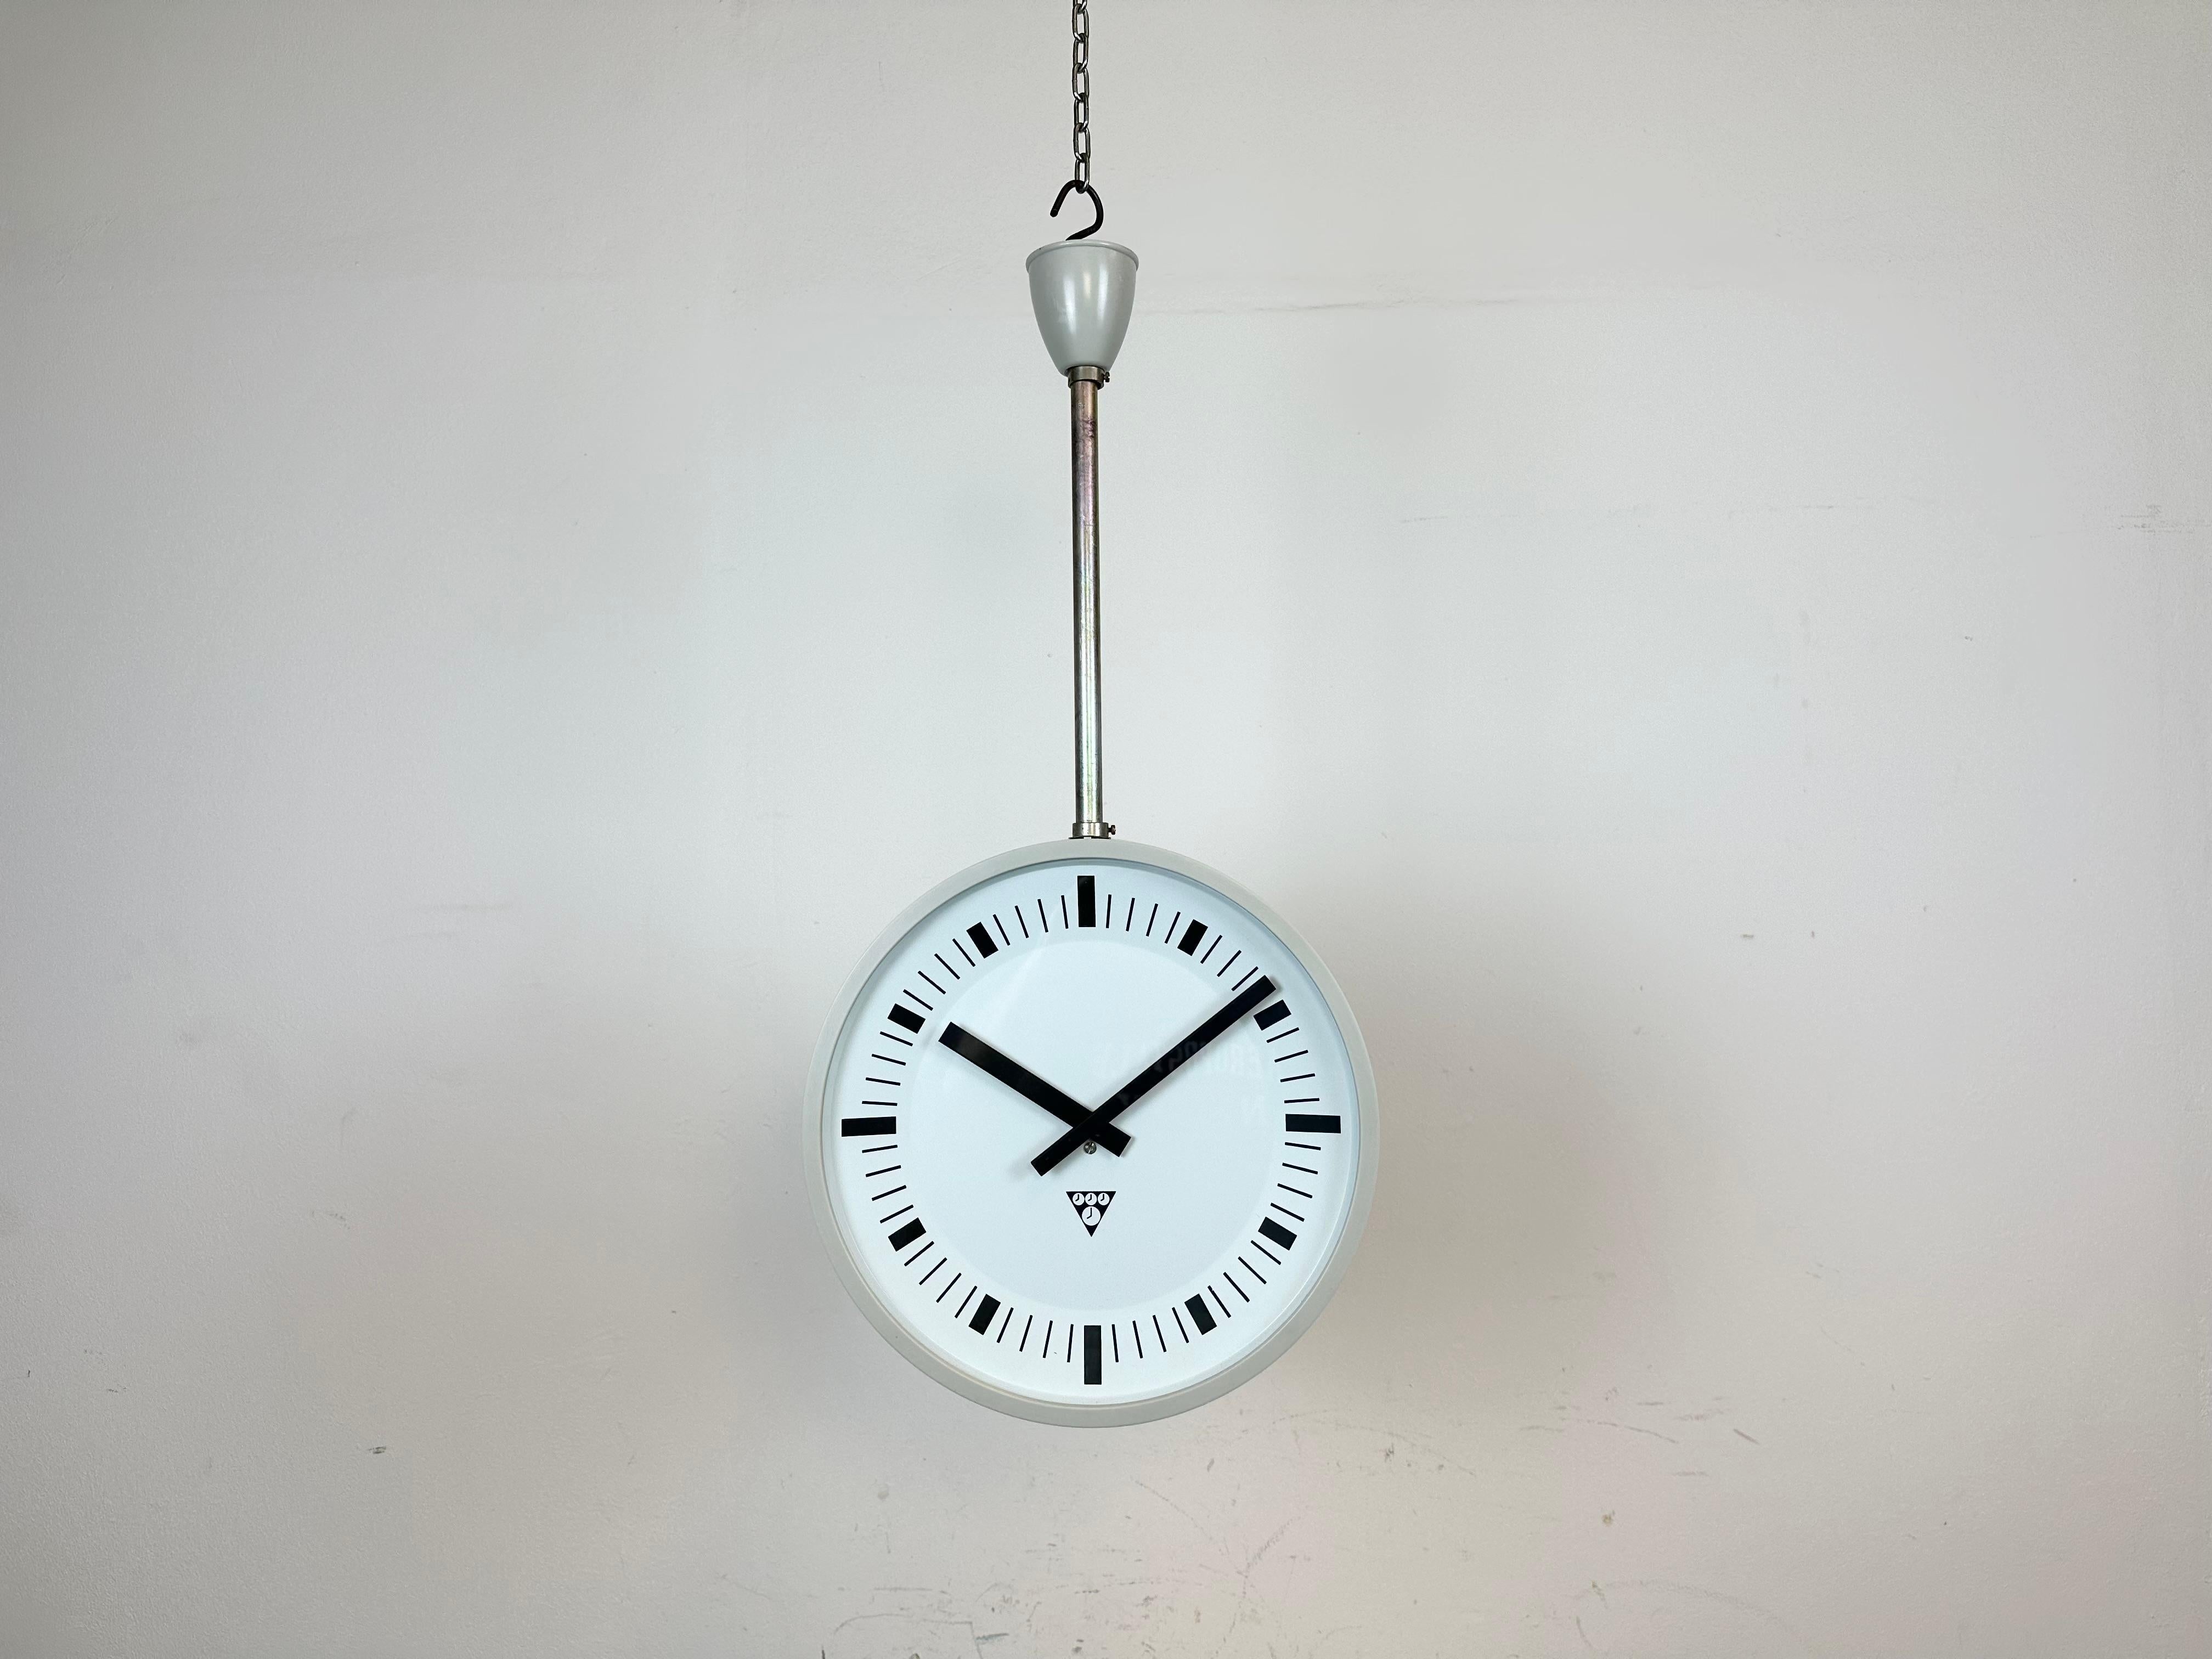 Cette horloge d'usine ou de gare double face a été produite par Pragotron, dans l'ancienne Tchécoslovaquie, au cours des années 1980. La pièce comprend une horloge en bakélite de deux couleurs grises avec un couvercle en verre et une fixation en fer